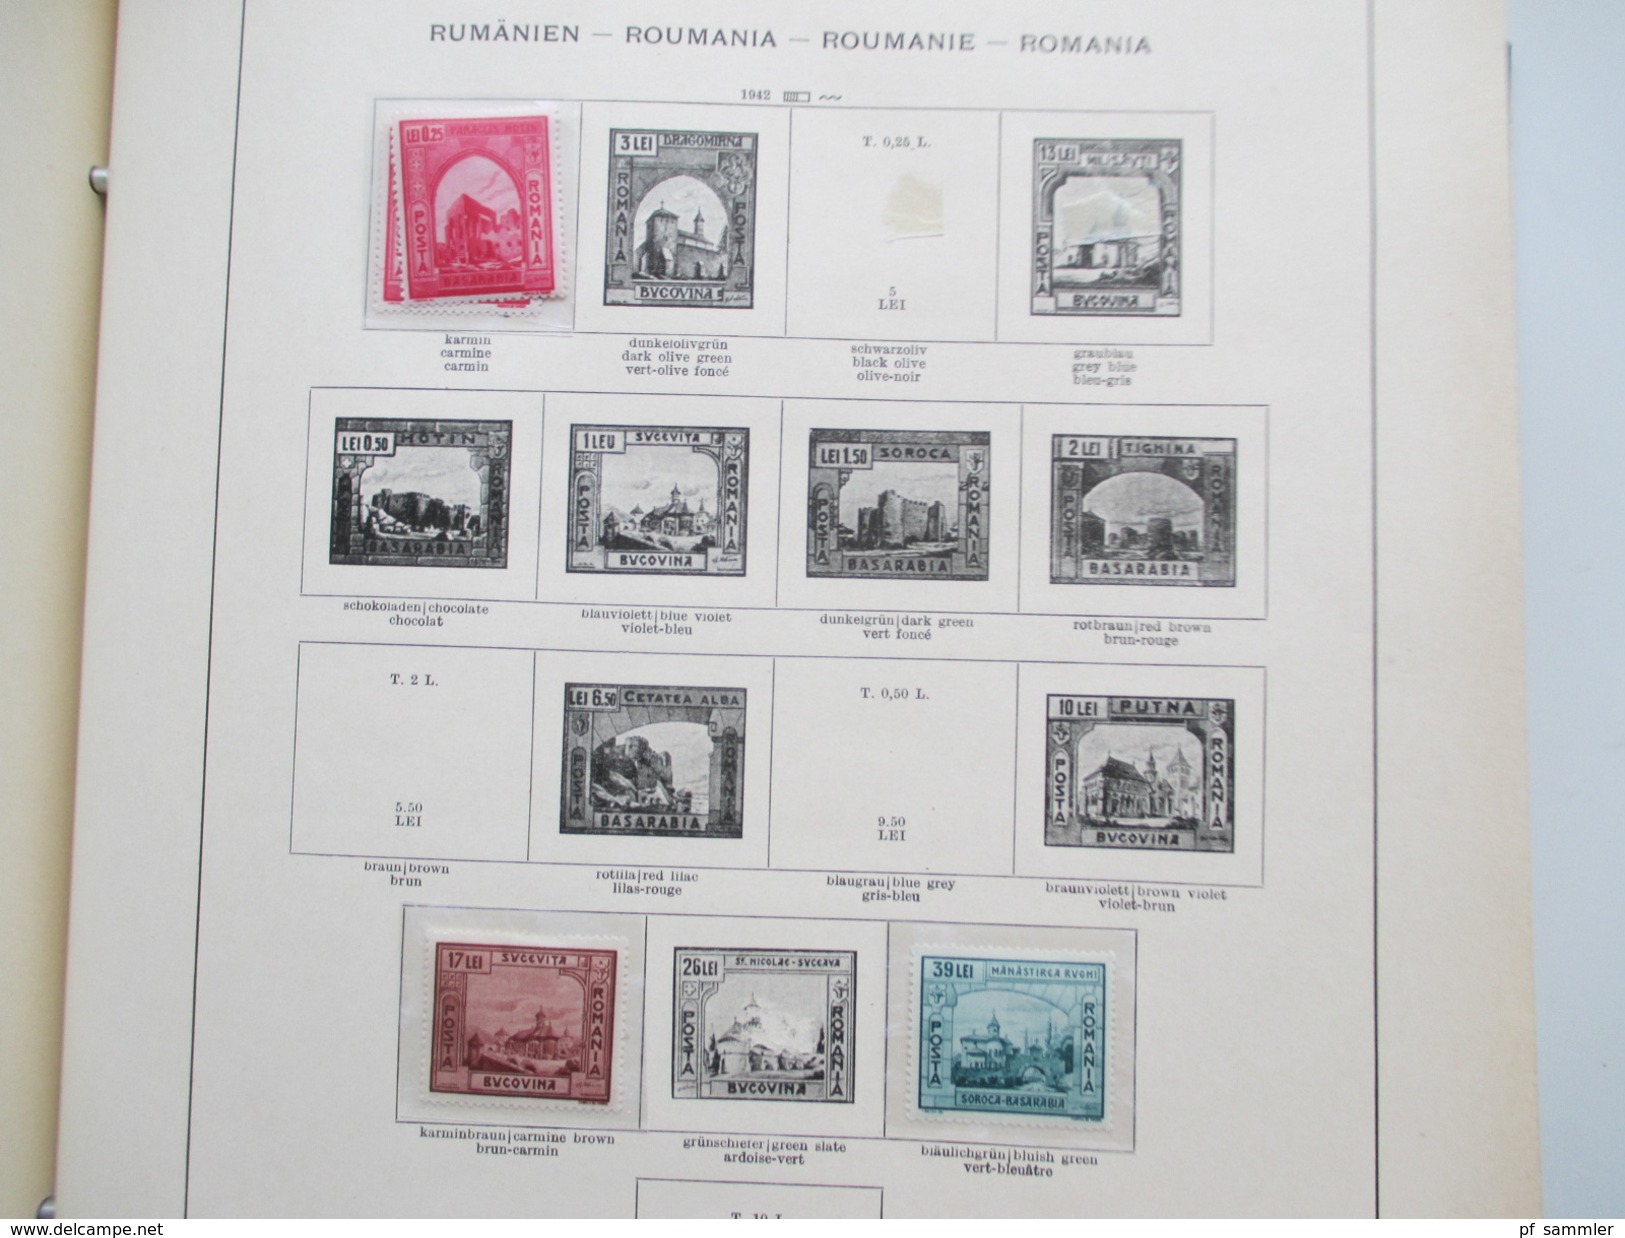 Sammlung Rumänien 1866 - 1957 * / o im Vordruckalbum mit viel Material! Fundgrube!!